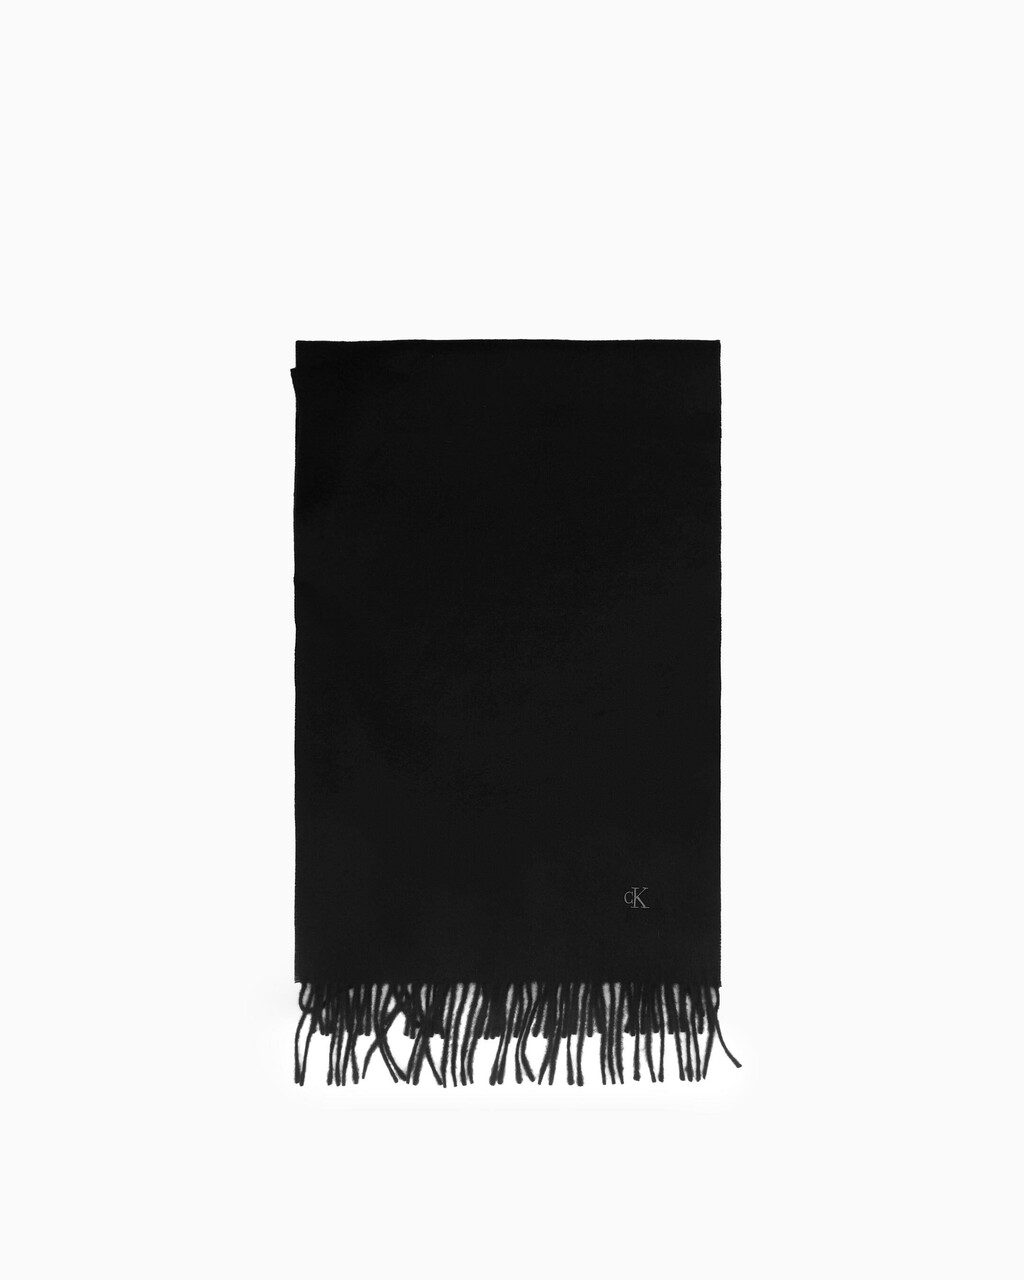 MONOGRAM 羊絨頸巾, BLACK, hi-res